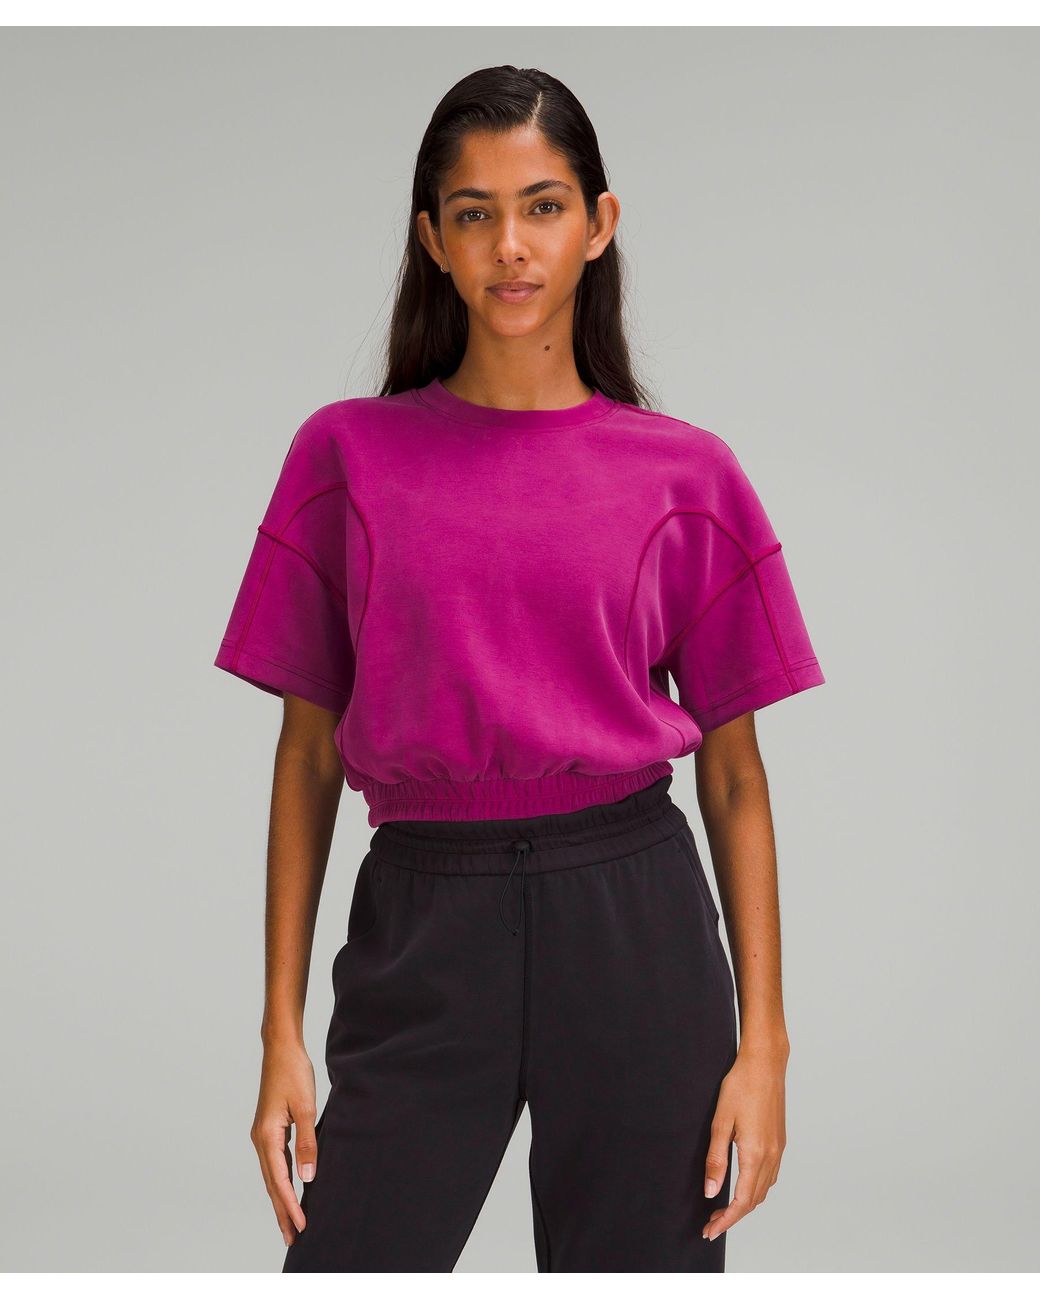 https://cdna.lystit.com/1040/1300/n/photos/lululemon/738938d1/lululemon-athletica-designer-Magenta-Purple-Softstreme-Gathered-T-shirt.jpeg